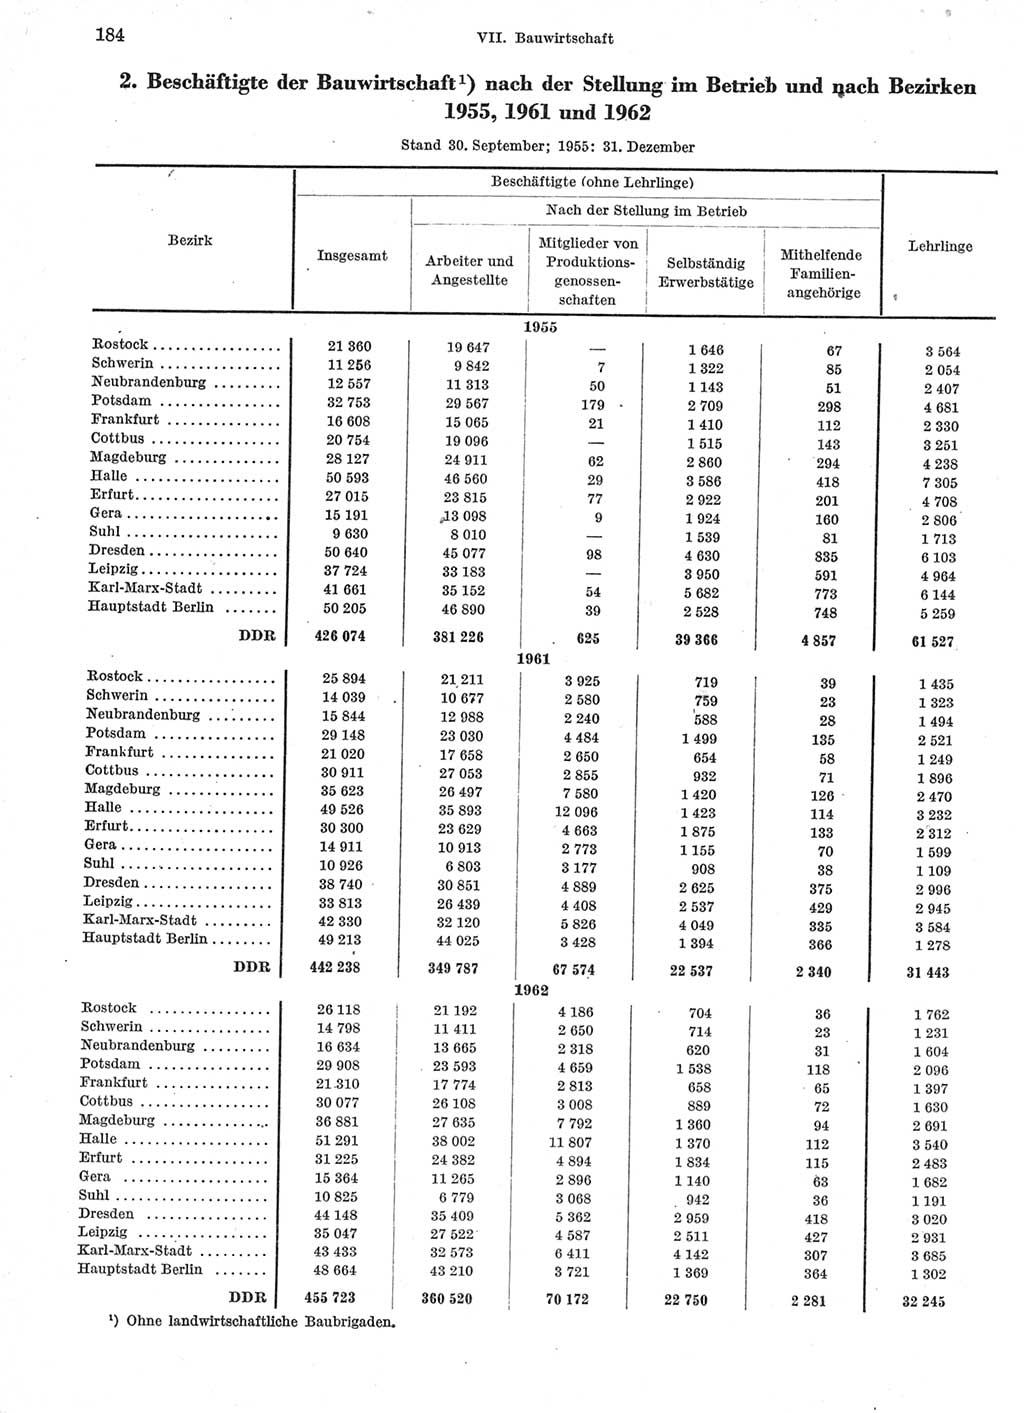 Statistisches Jahrbuch der Deutschen Demokratischen Republik (DDR) 1963, Seite 184 (Stat. Jb. DDR 1963, S. 184)